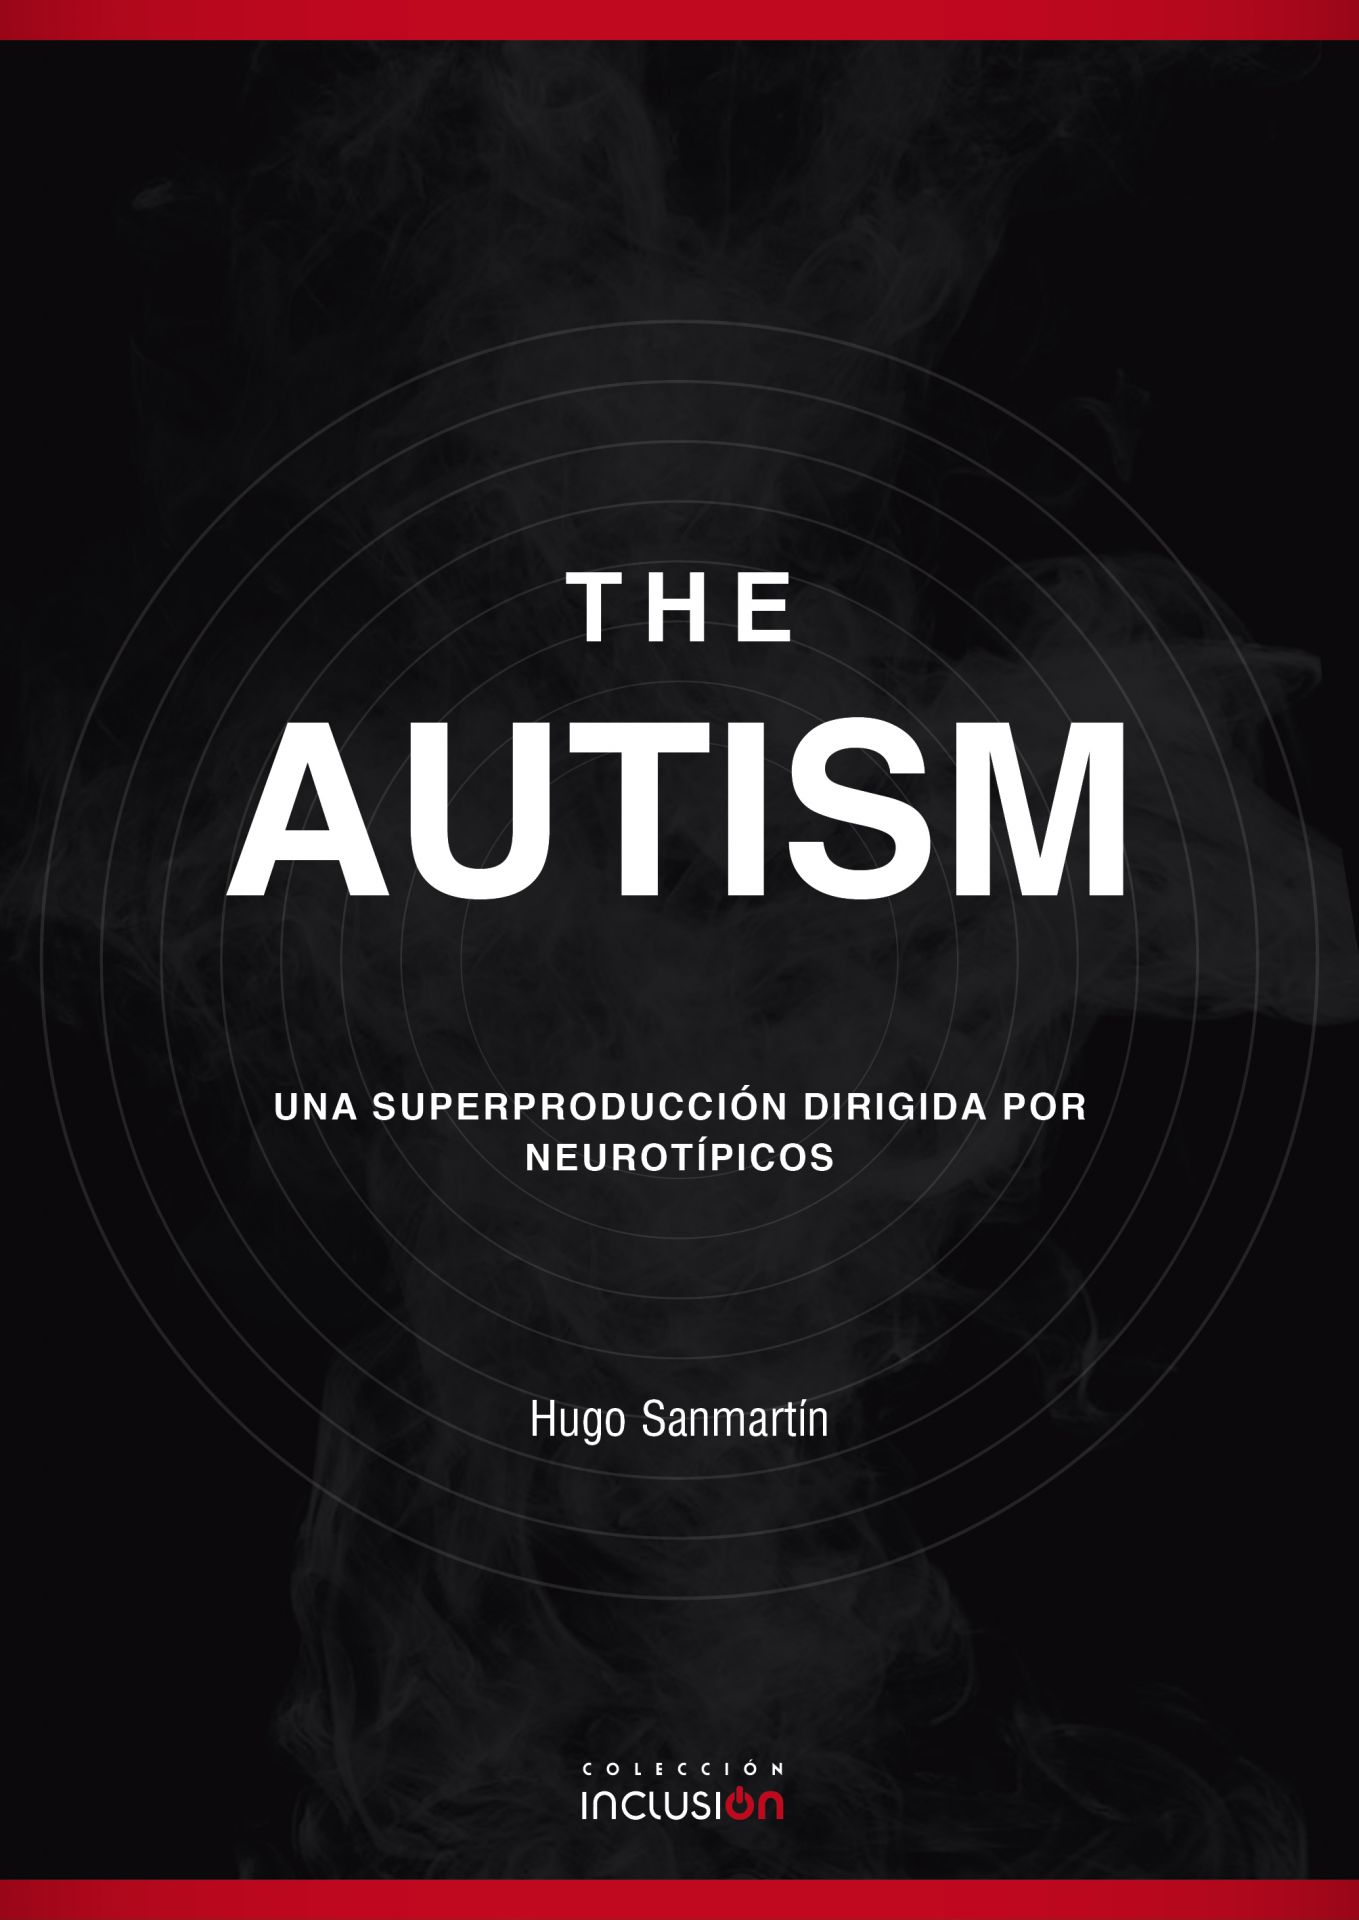 https://www.psylicomediciones.com/p9566326-the-autism.html